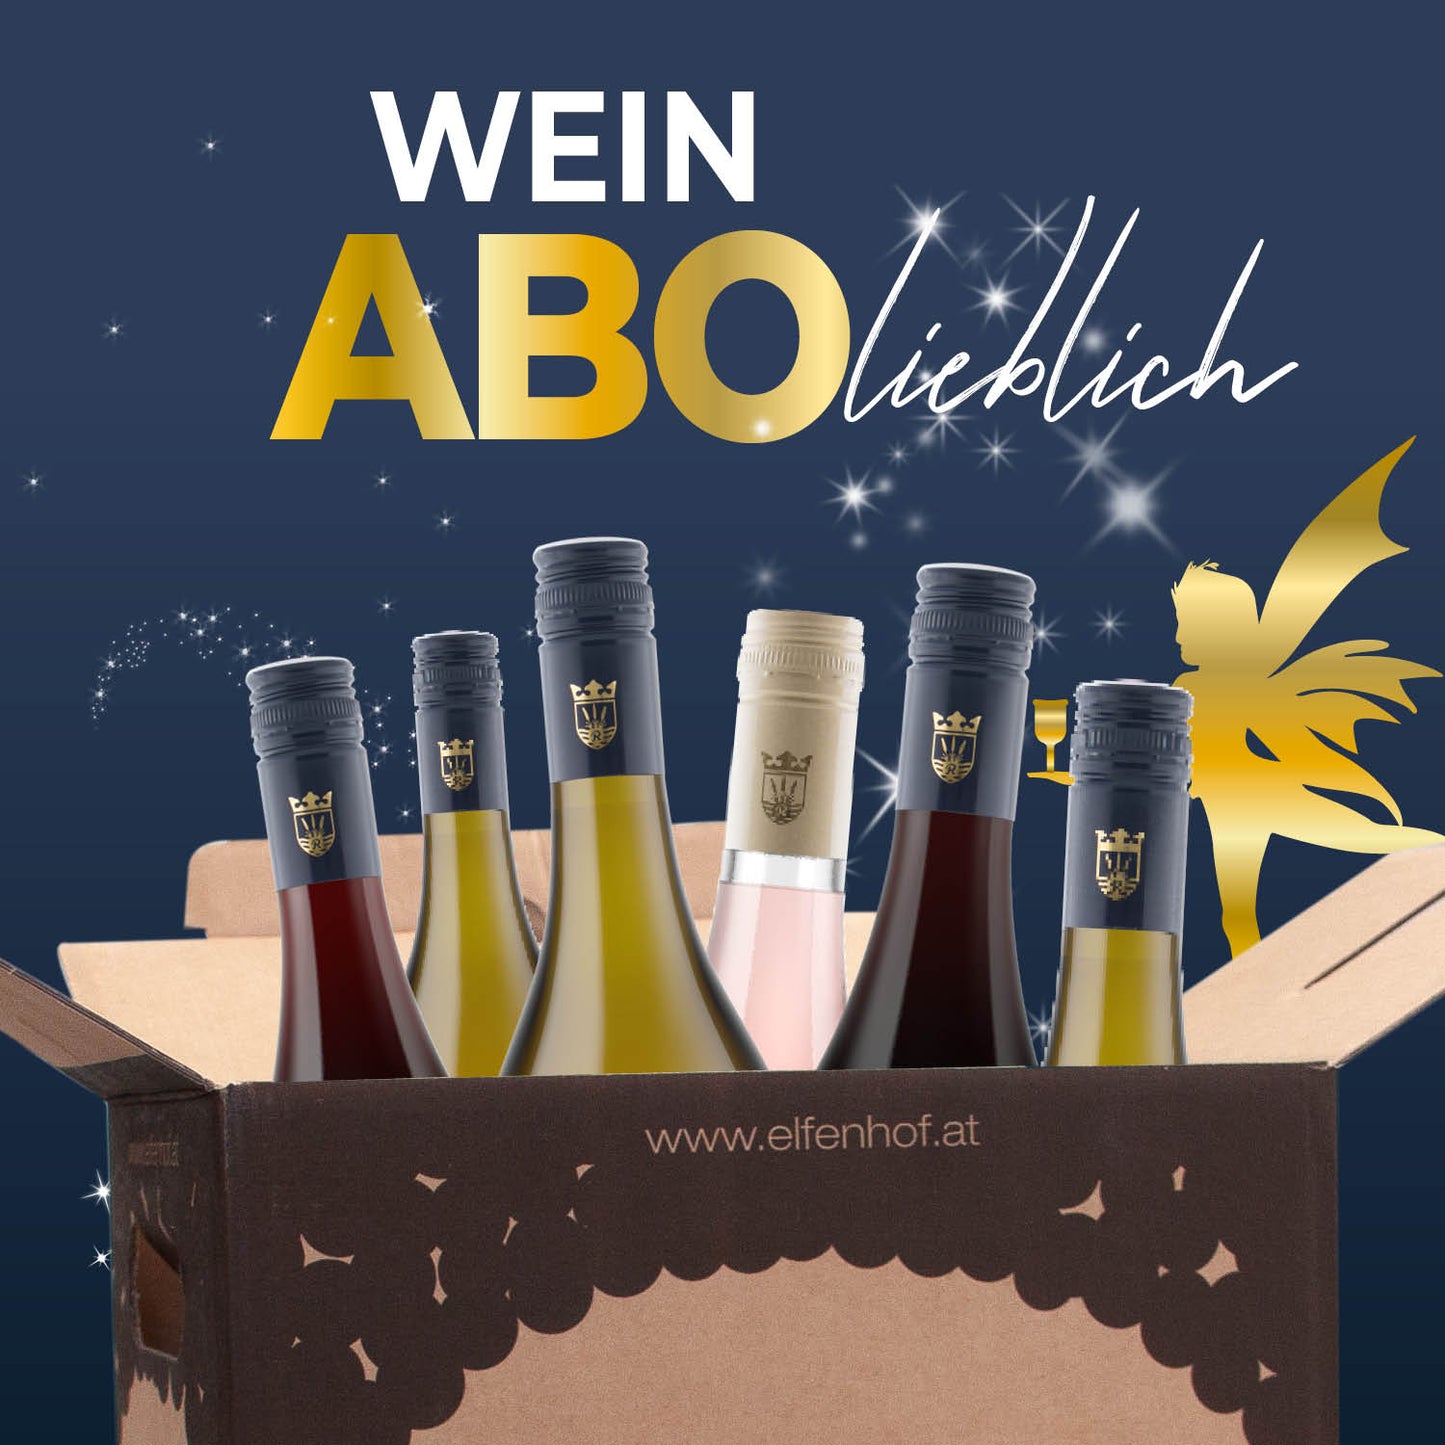 WeinAbo by elfenhof